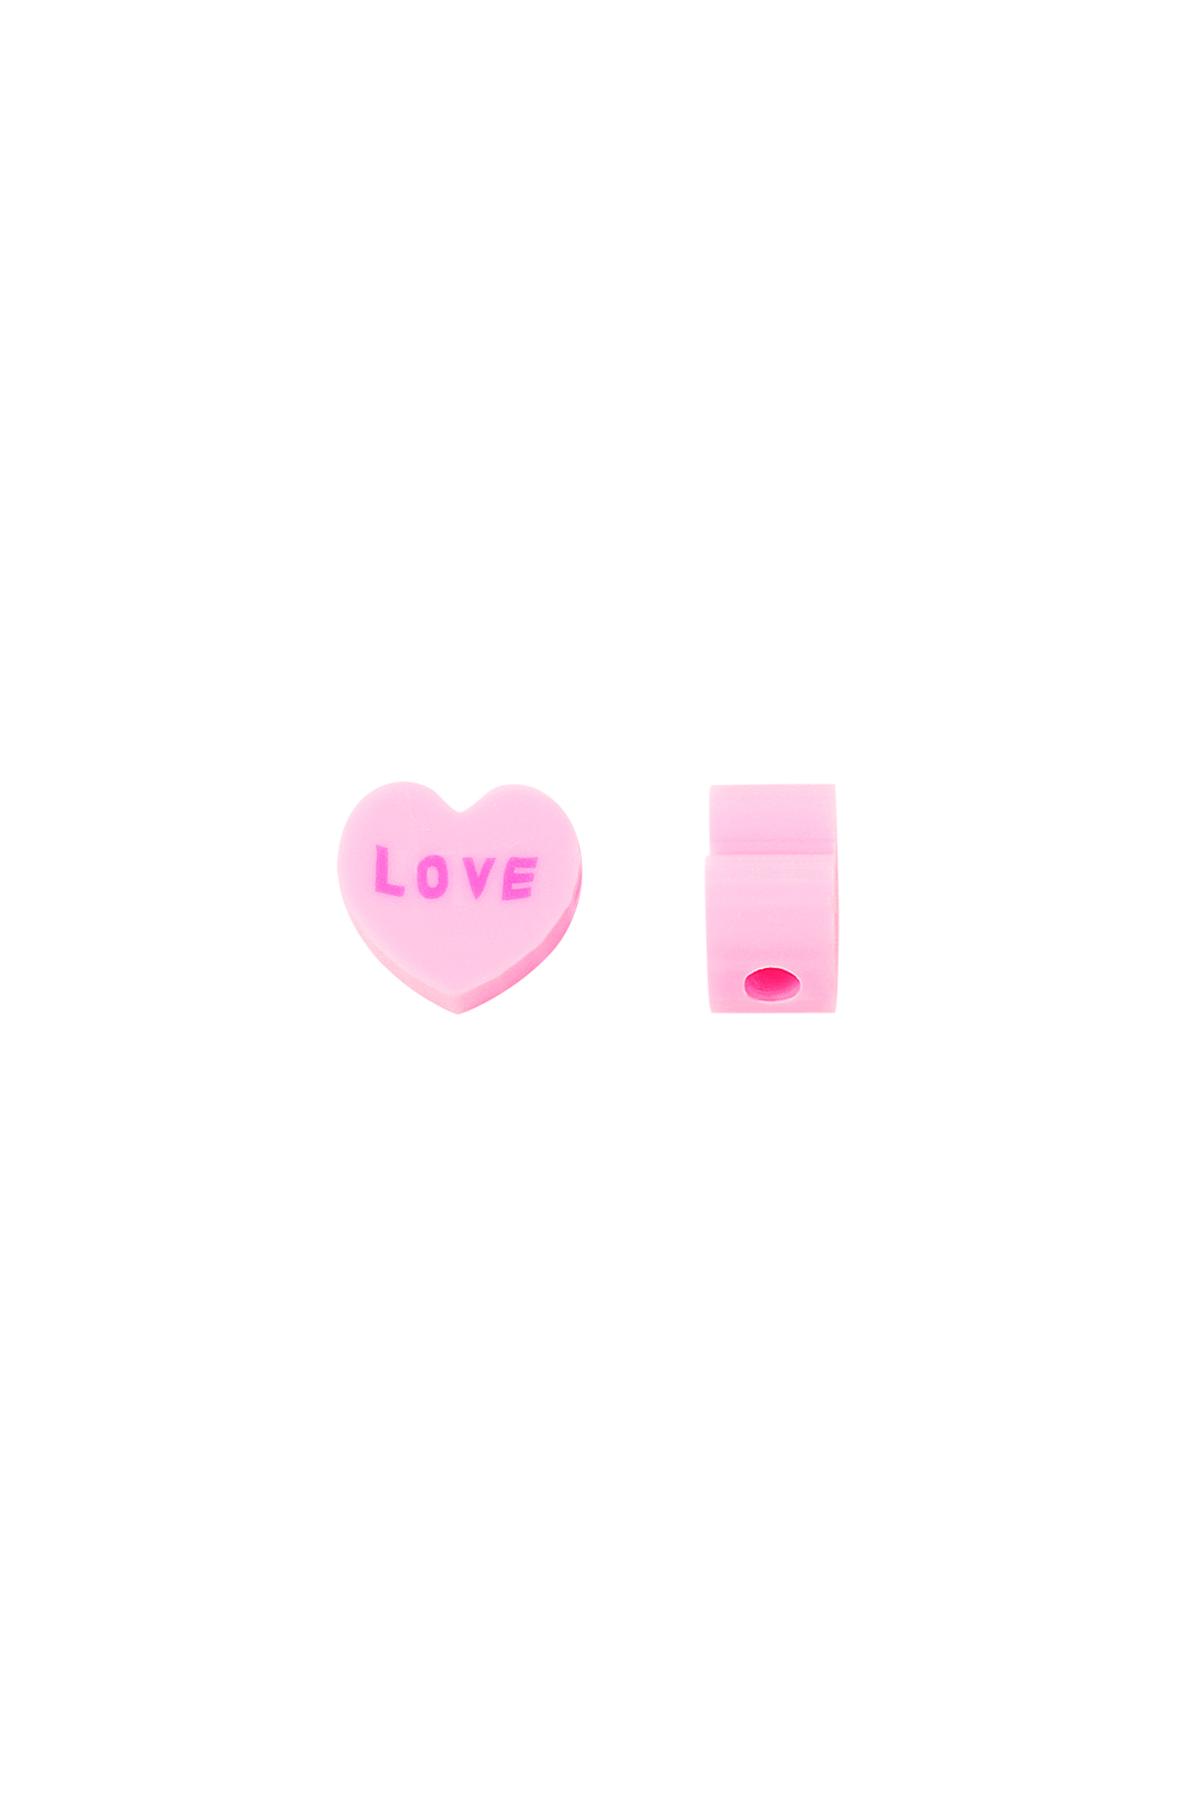 Polimer boncuklar Aşk kalpleri Pink polymer clay